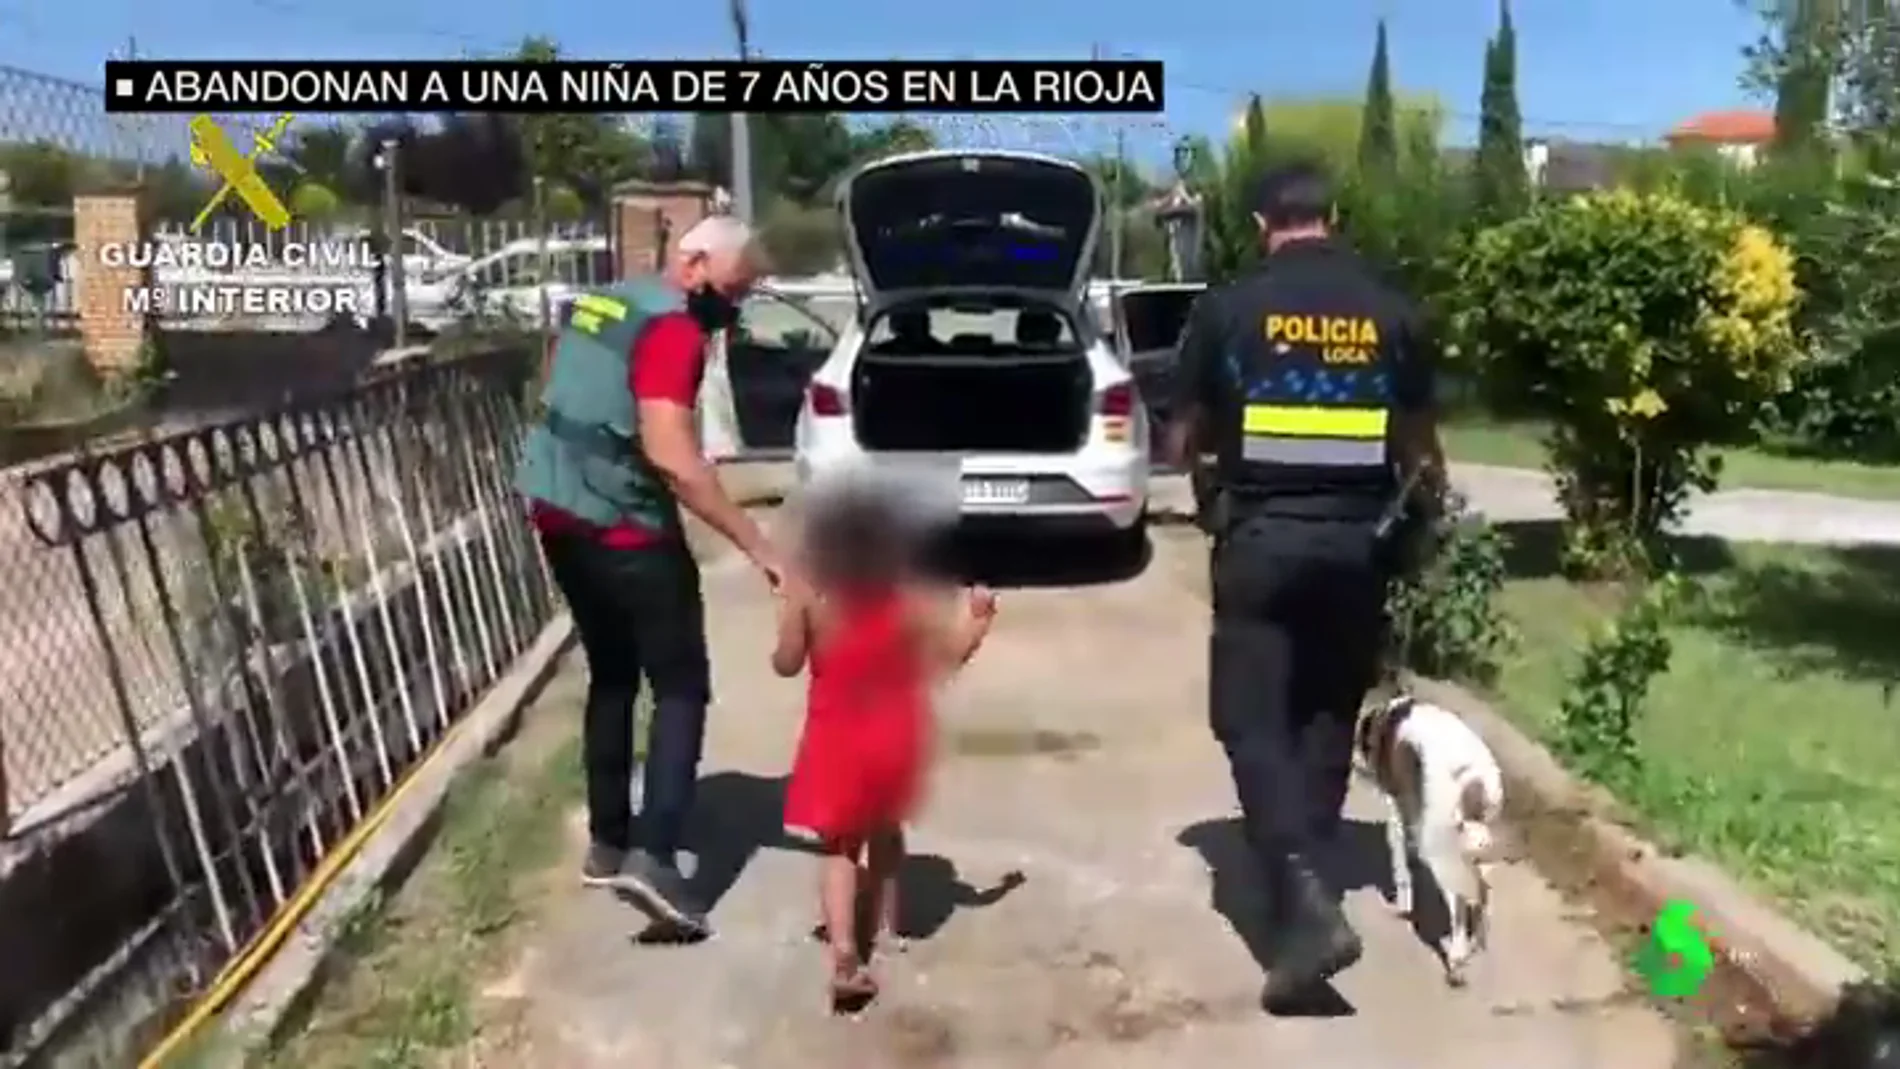 Habla el guardia civil que halló a la niña de siete años abandonada por la pareja de su madre en La Rioja: "Te llega, te choca"